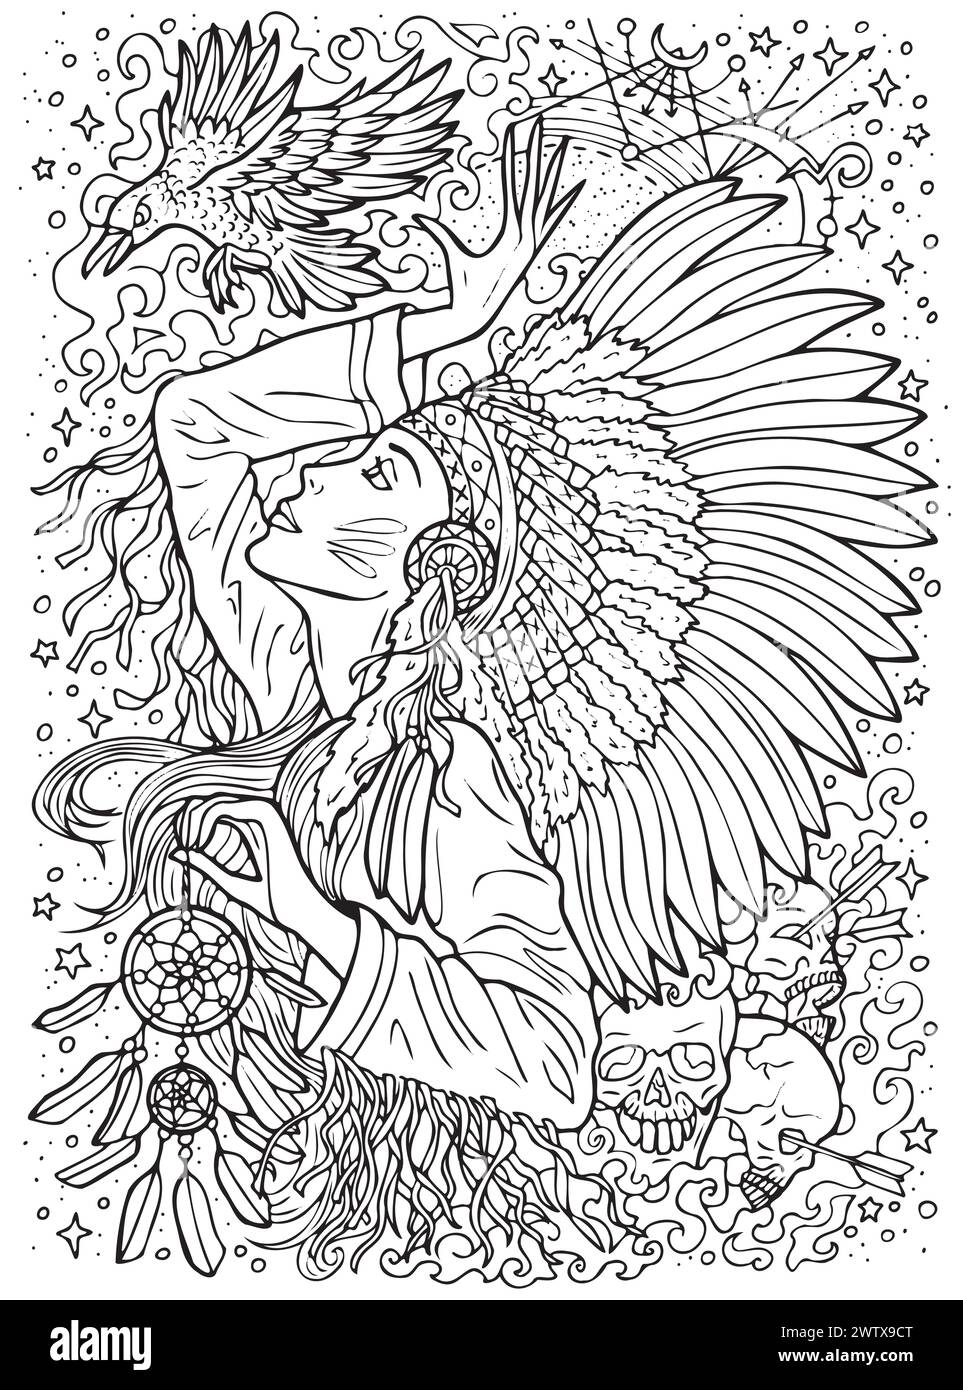 Illustration mit Fantasy-Gravur mit wunderschöner indianischer Frau als Hexe oder Magier zum Ausmalen. Handgezeichnete grafische Strichgrafik mit ethnischen Betrügern Stock Vektor